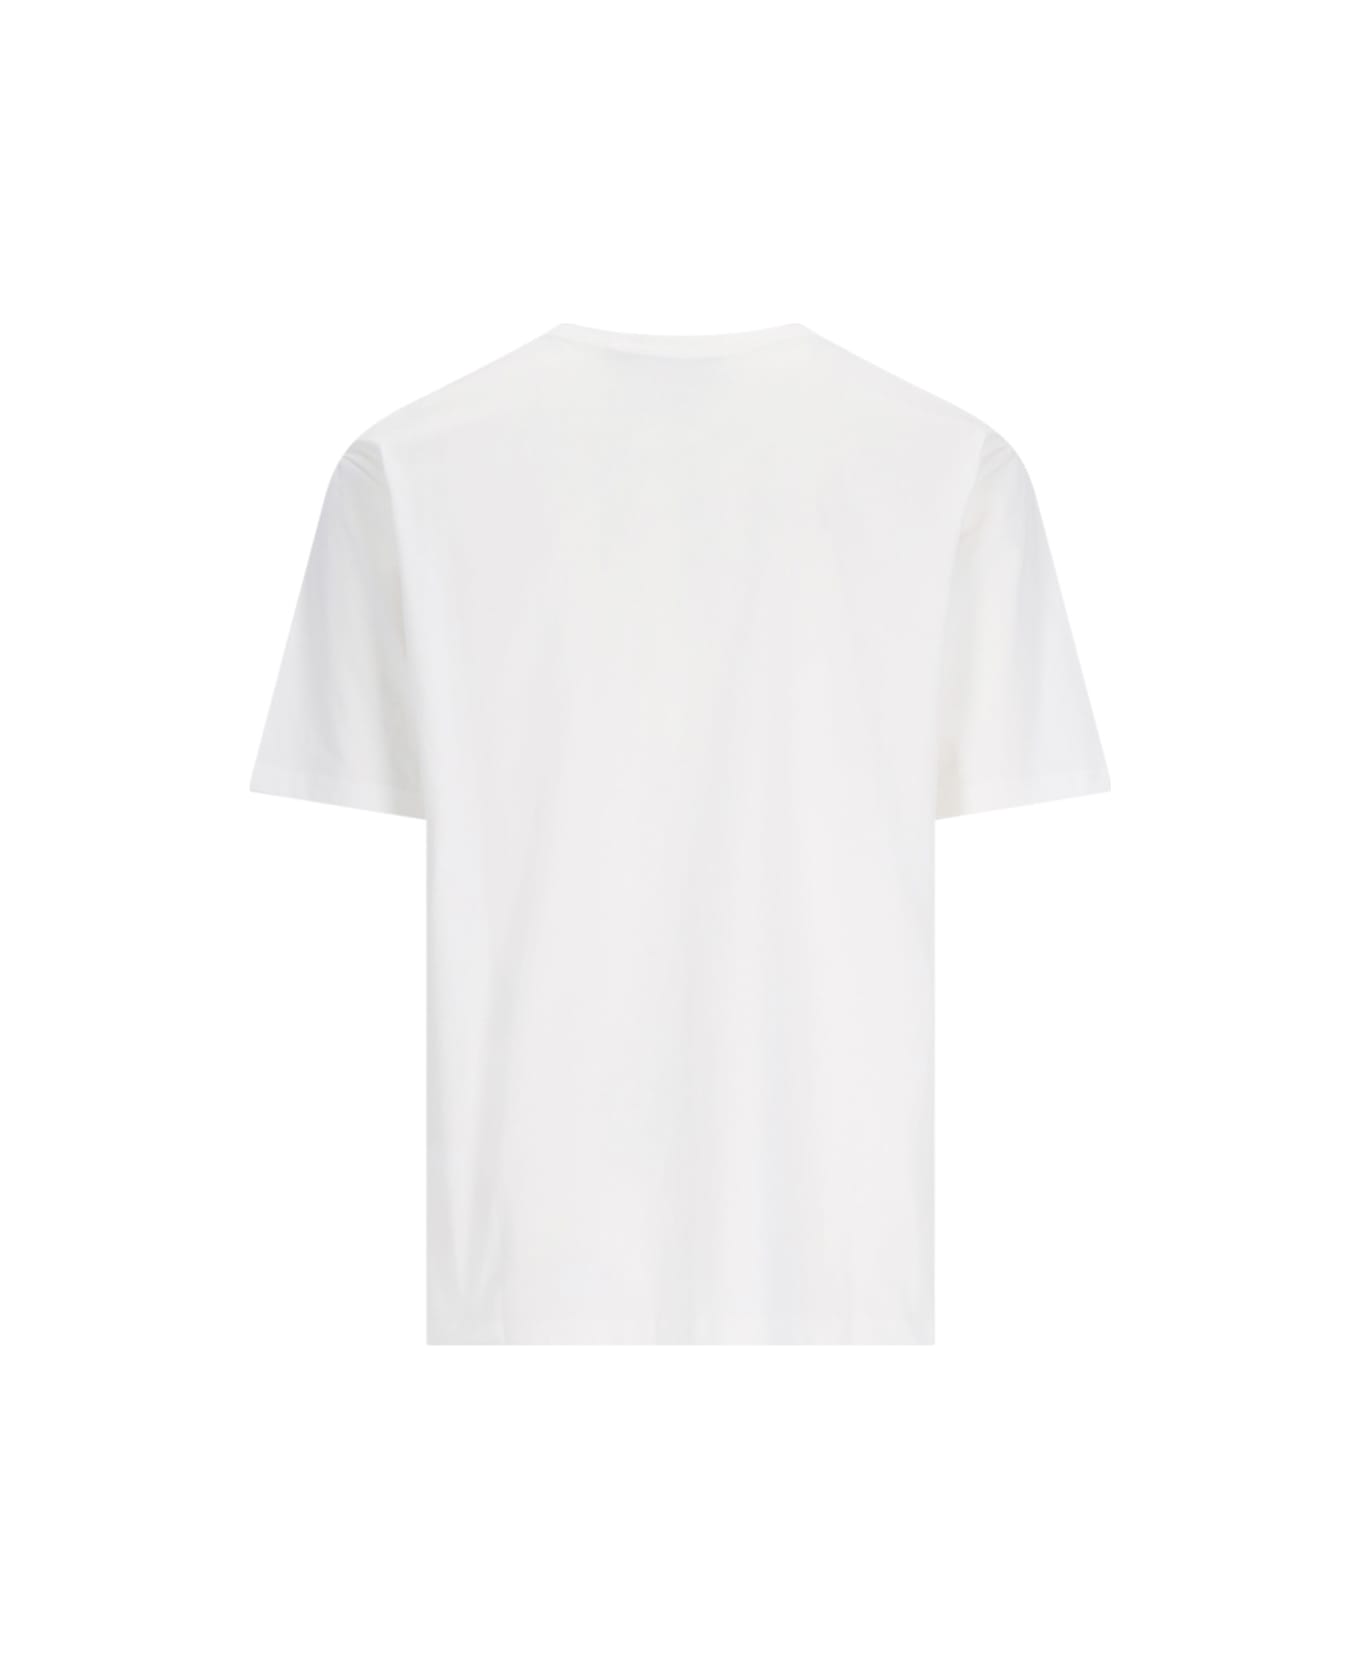 Gramicci Logo T-shirt - White